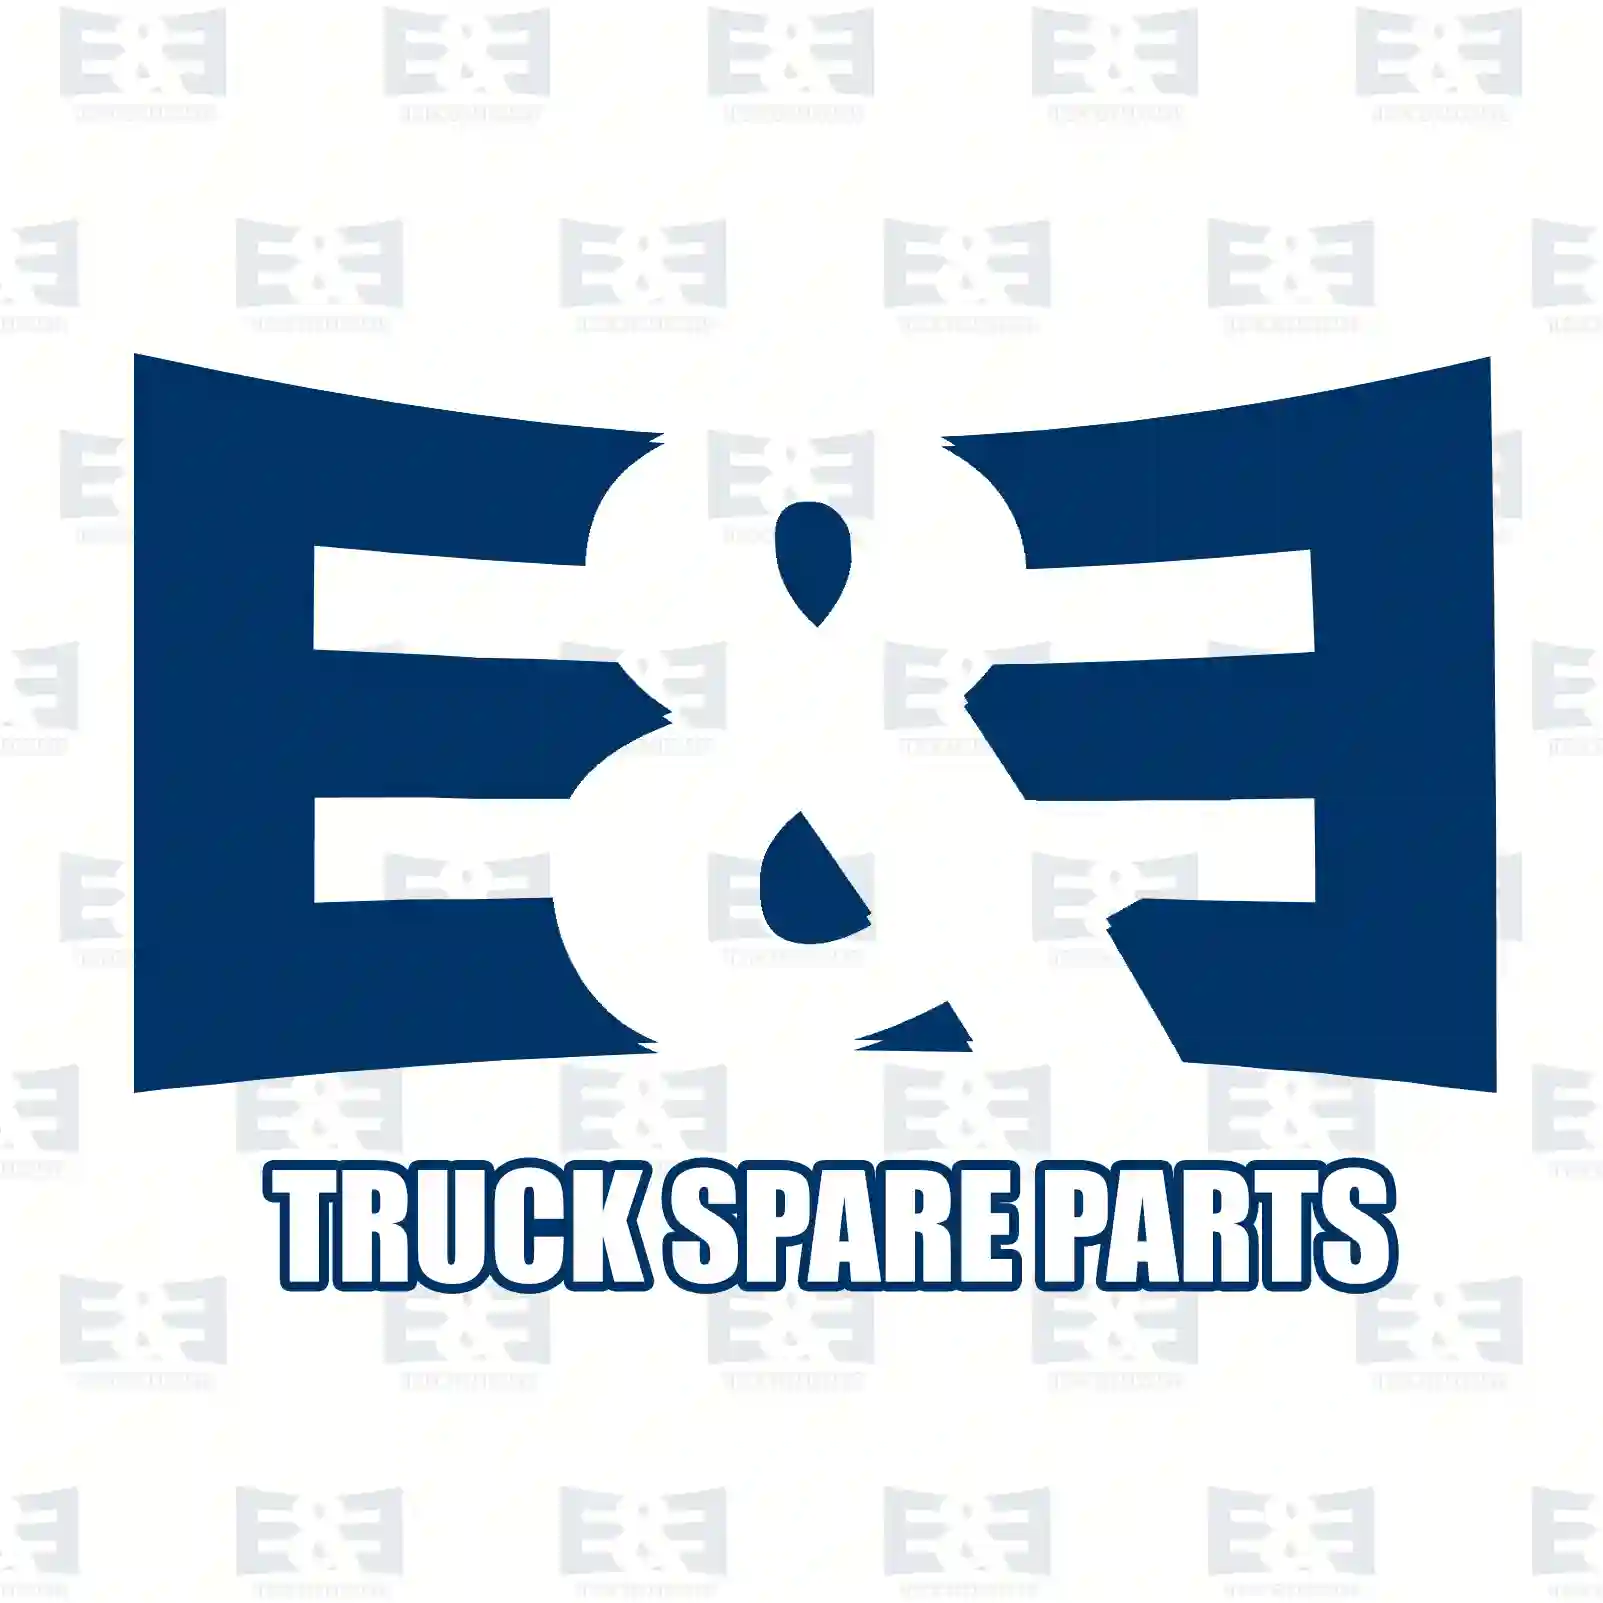 Oil seal, 2E2279243, 3825169, 85107061, 85110539, ||  2E2279243 E&E Truck Spare Parts | Truck Spare Parts, Auotomotive Spare Parts Oil seal, 2E2279243, 3825169, 85107061, 85110539, ||  2E2279243 E&E Truck Spare Parts | Truck Spare Parts, Auotomotive Spare Parts